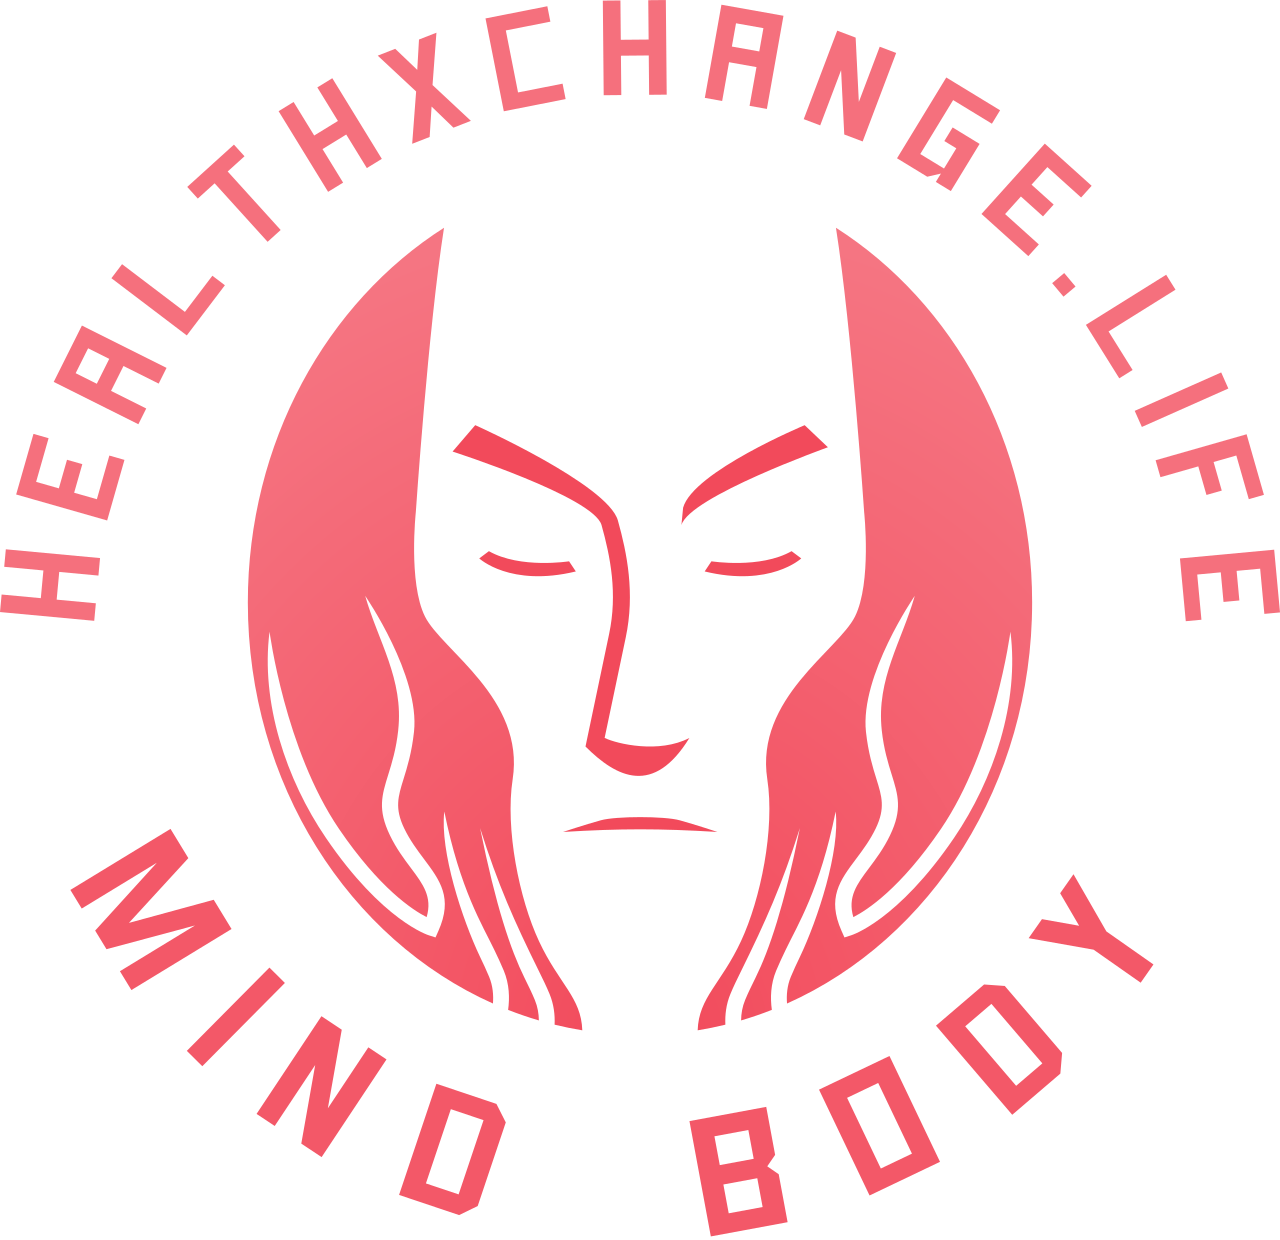 Healthxchange.life's logo